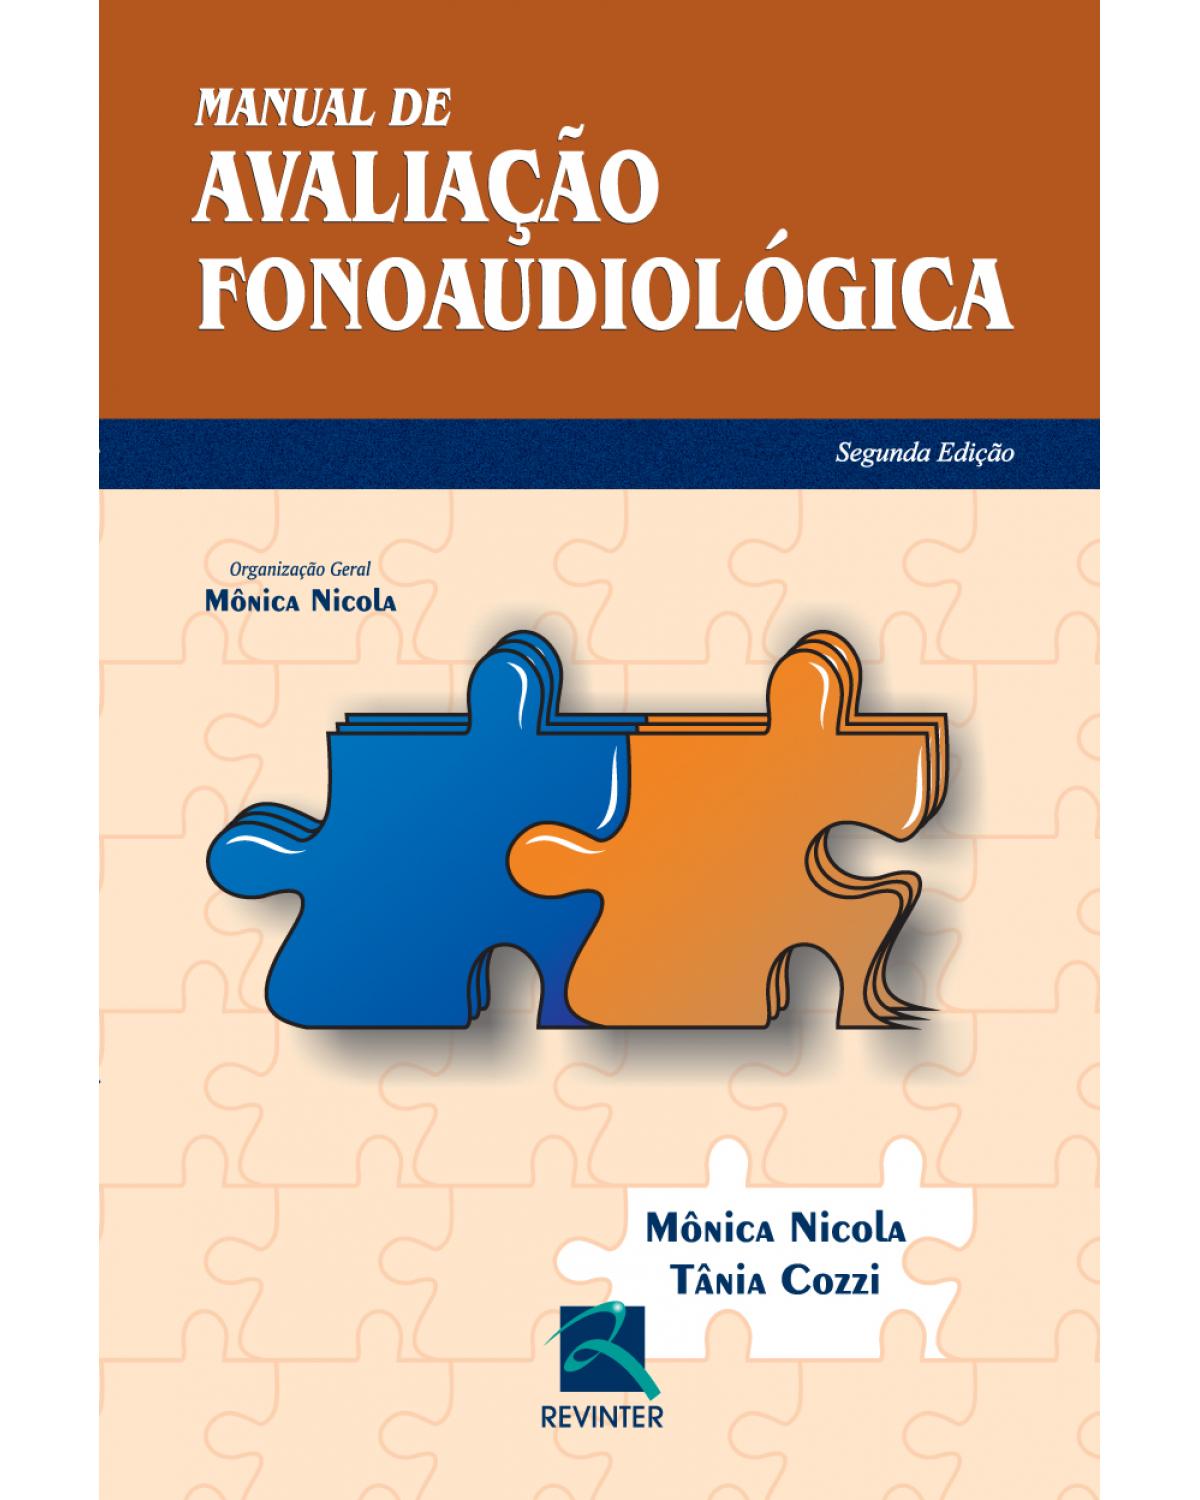 Manual de avaliação fonoaudiológica - 2ª Edição | 2013